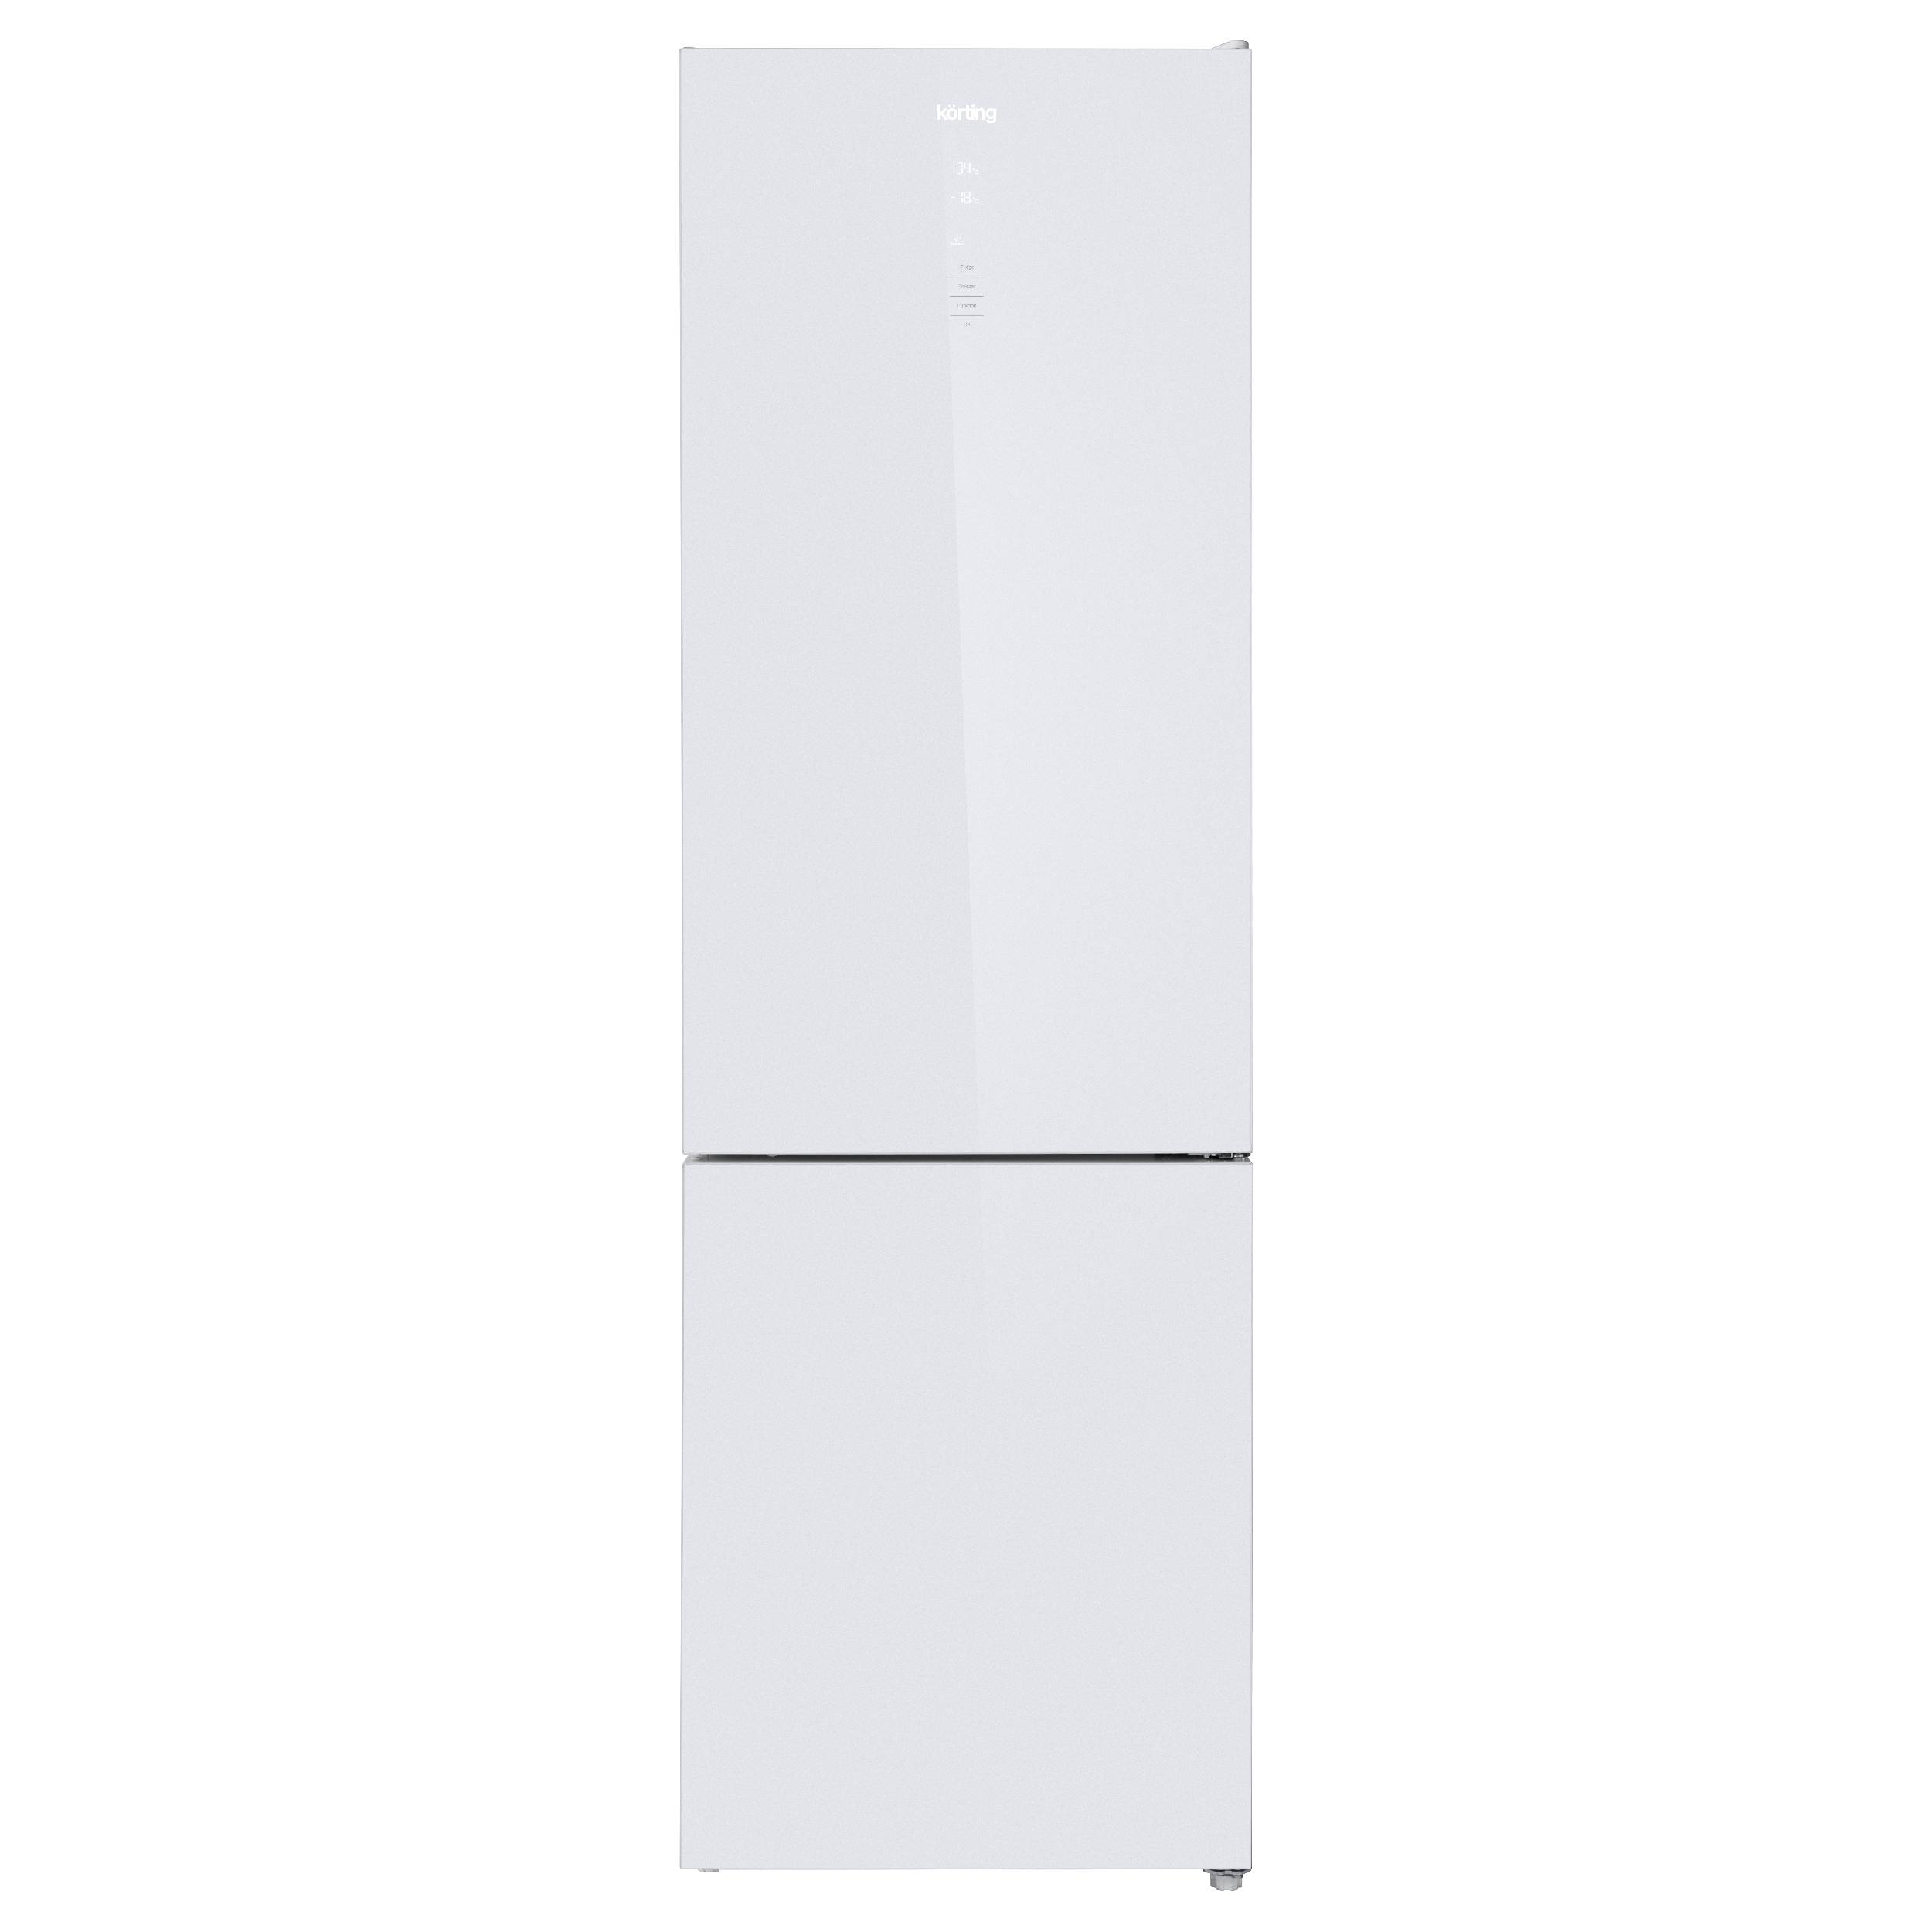 Холодильник Korting KNFC 62370 GW белый, серебристый холодильник korting knfc 62029 w белый